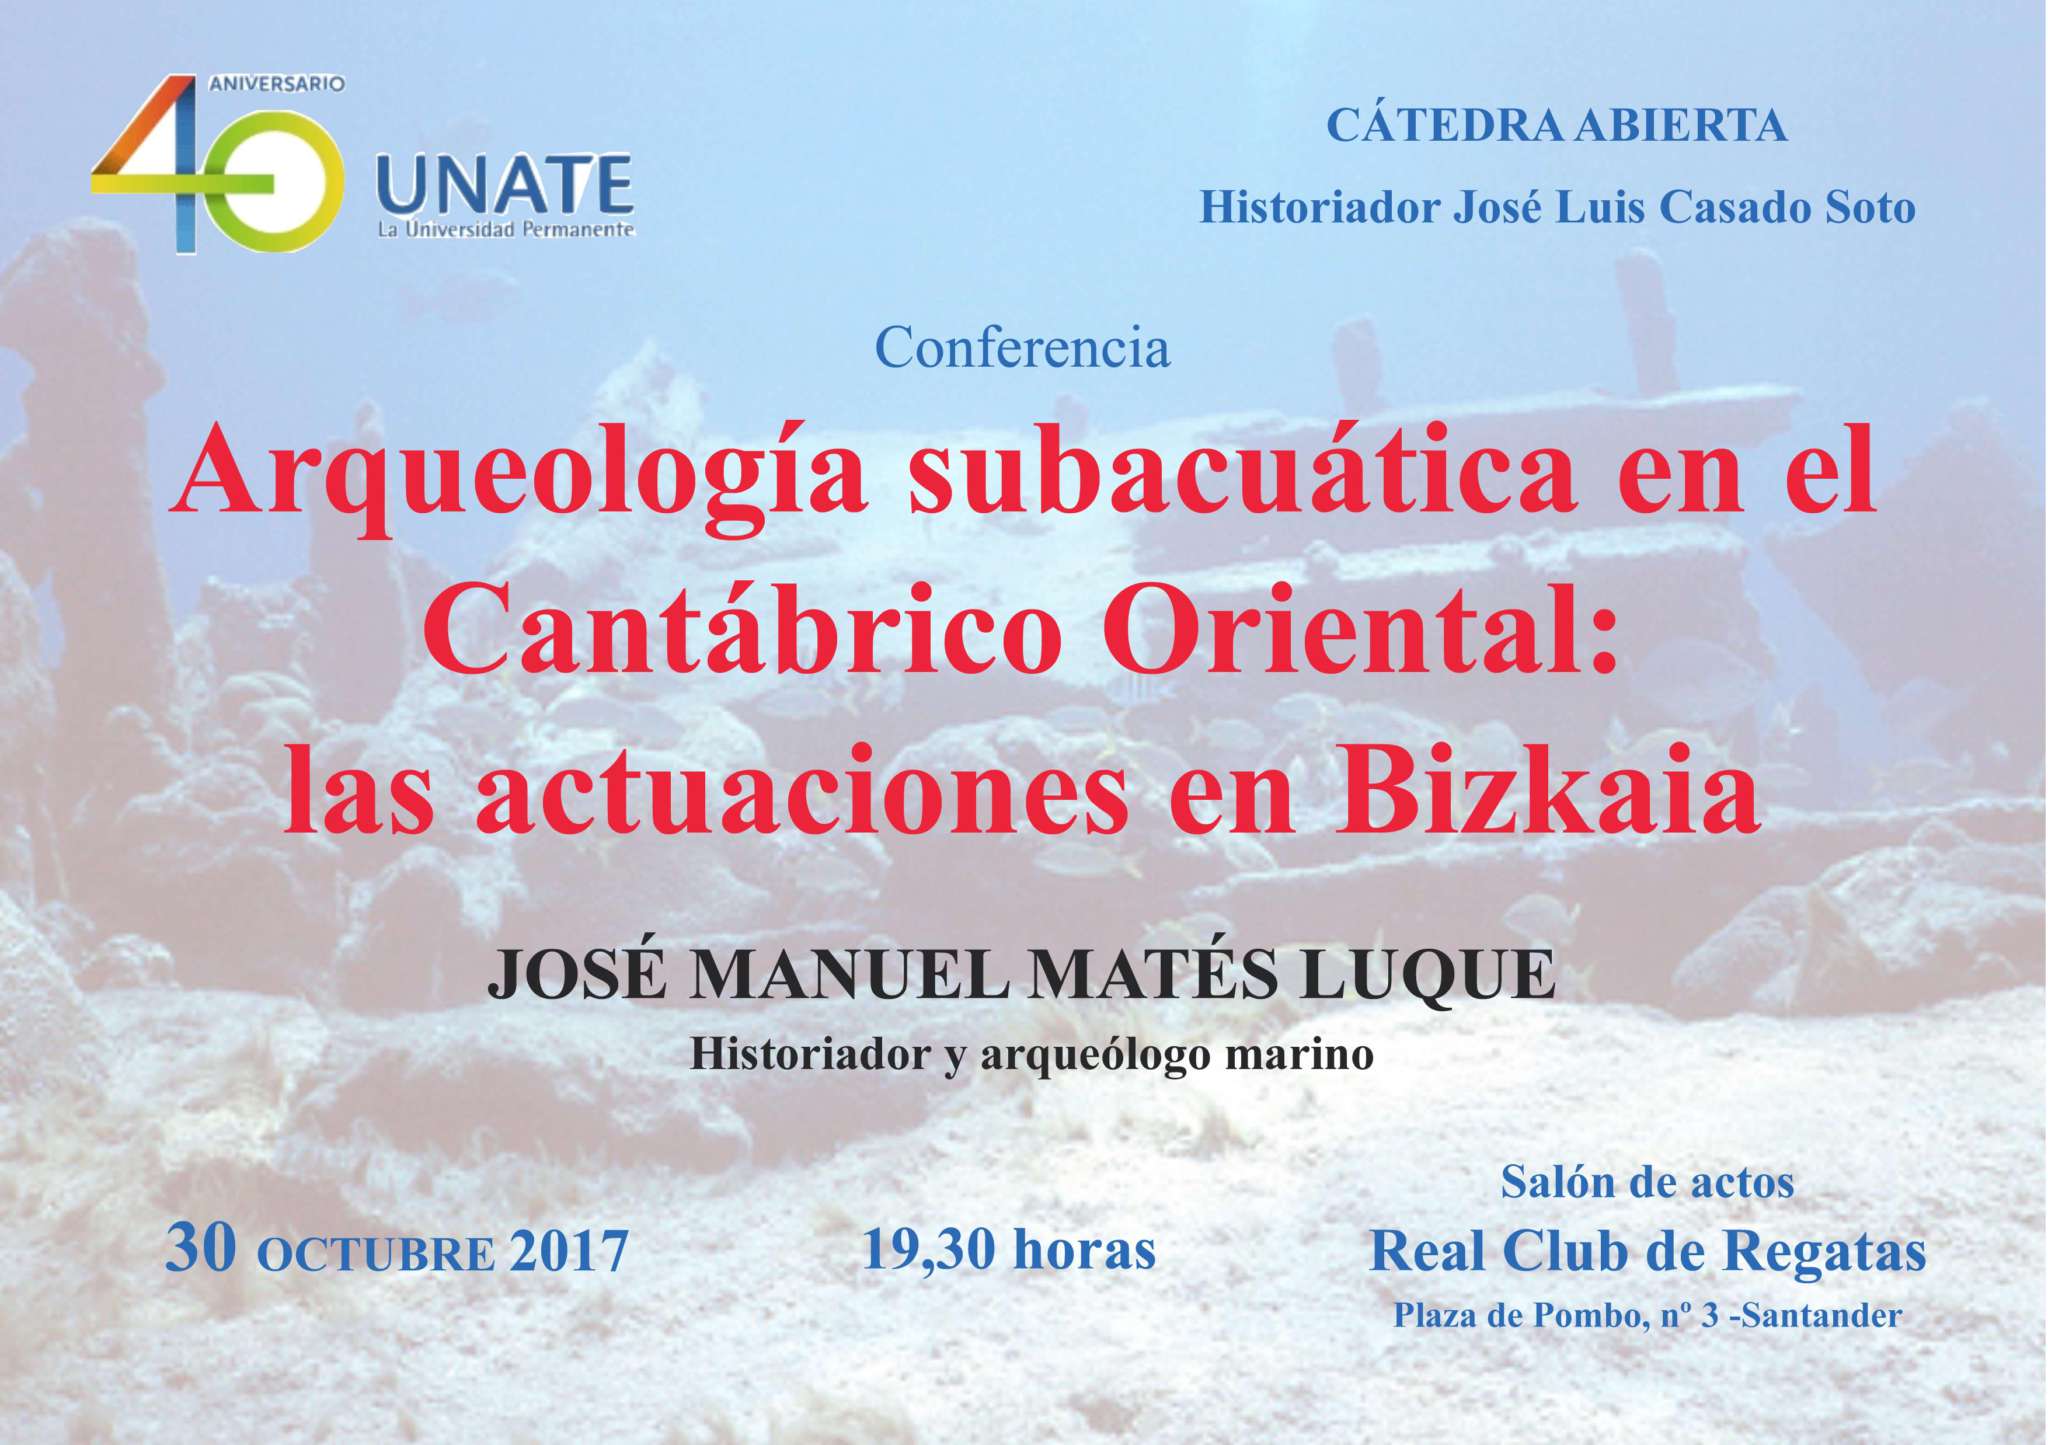 Nueva conferencia de la Cátedra Abierta José Luis Casado Soto